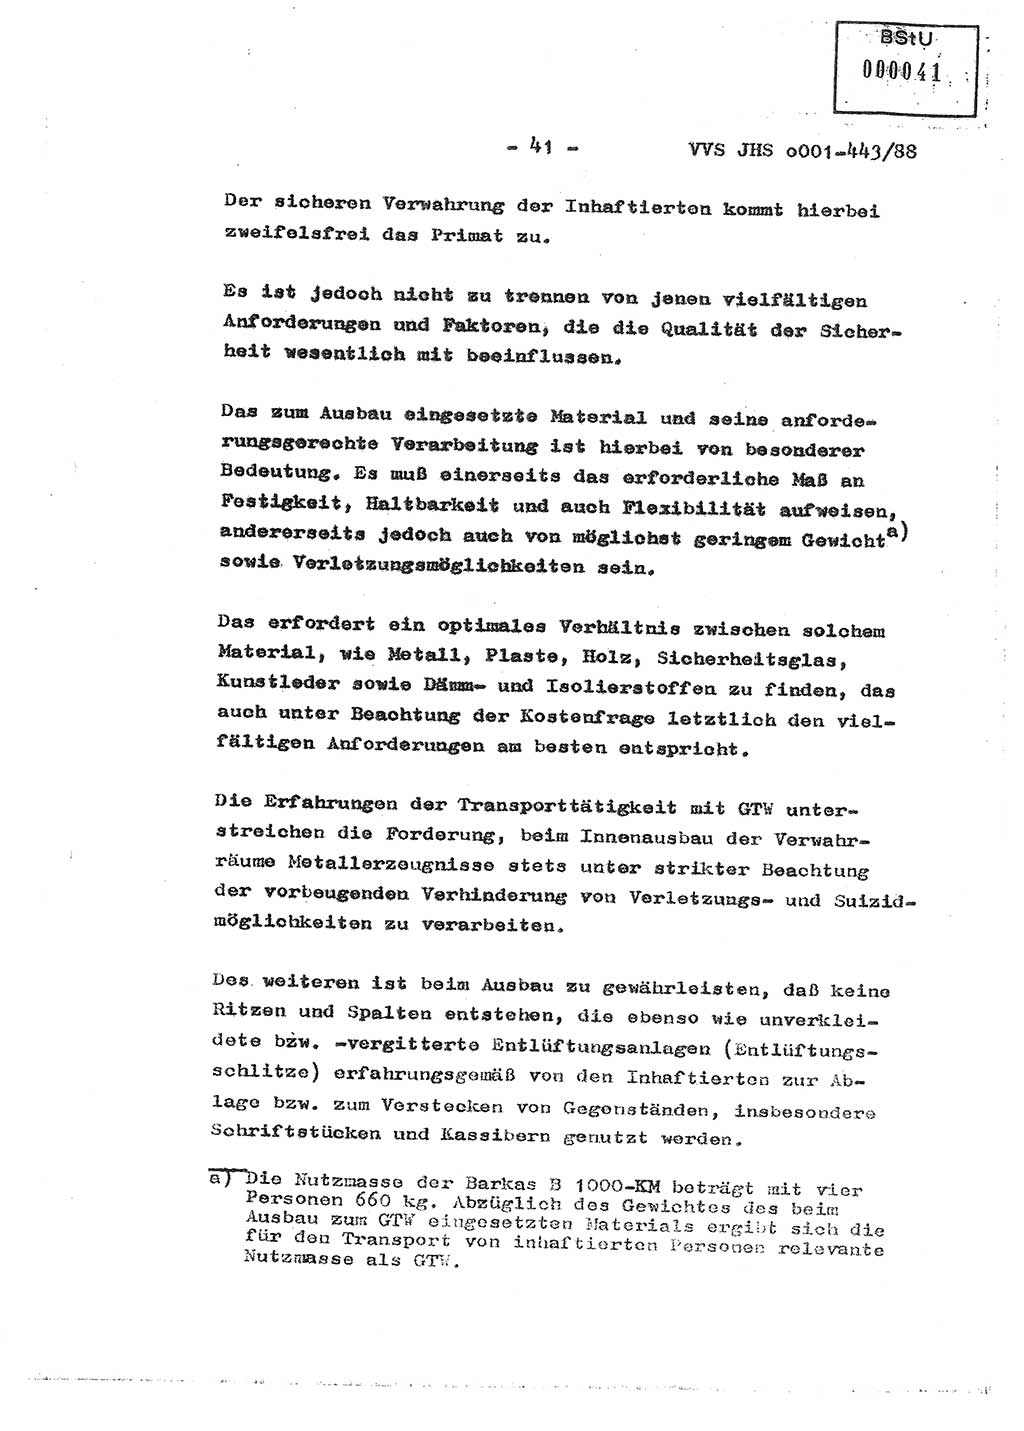 Diplomarbeit Hauptmann Michael Rast (Abt. ⅩⅣ), Major Bernd Rahaus (Abt. ⅩⅣ), Ministerium für Staatssicherheit (MfS) [Deutsche Demokratische Republik (DDR)], Juristische Hochschule (JHS), Vertrauliche Verschlußsache (VVS) o001-443/88, Potsdam 1988, Seite 41 (Dipl.-Arb. MfS DDR JHS VVS o001-443/88 1988, S. 41)